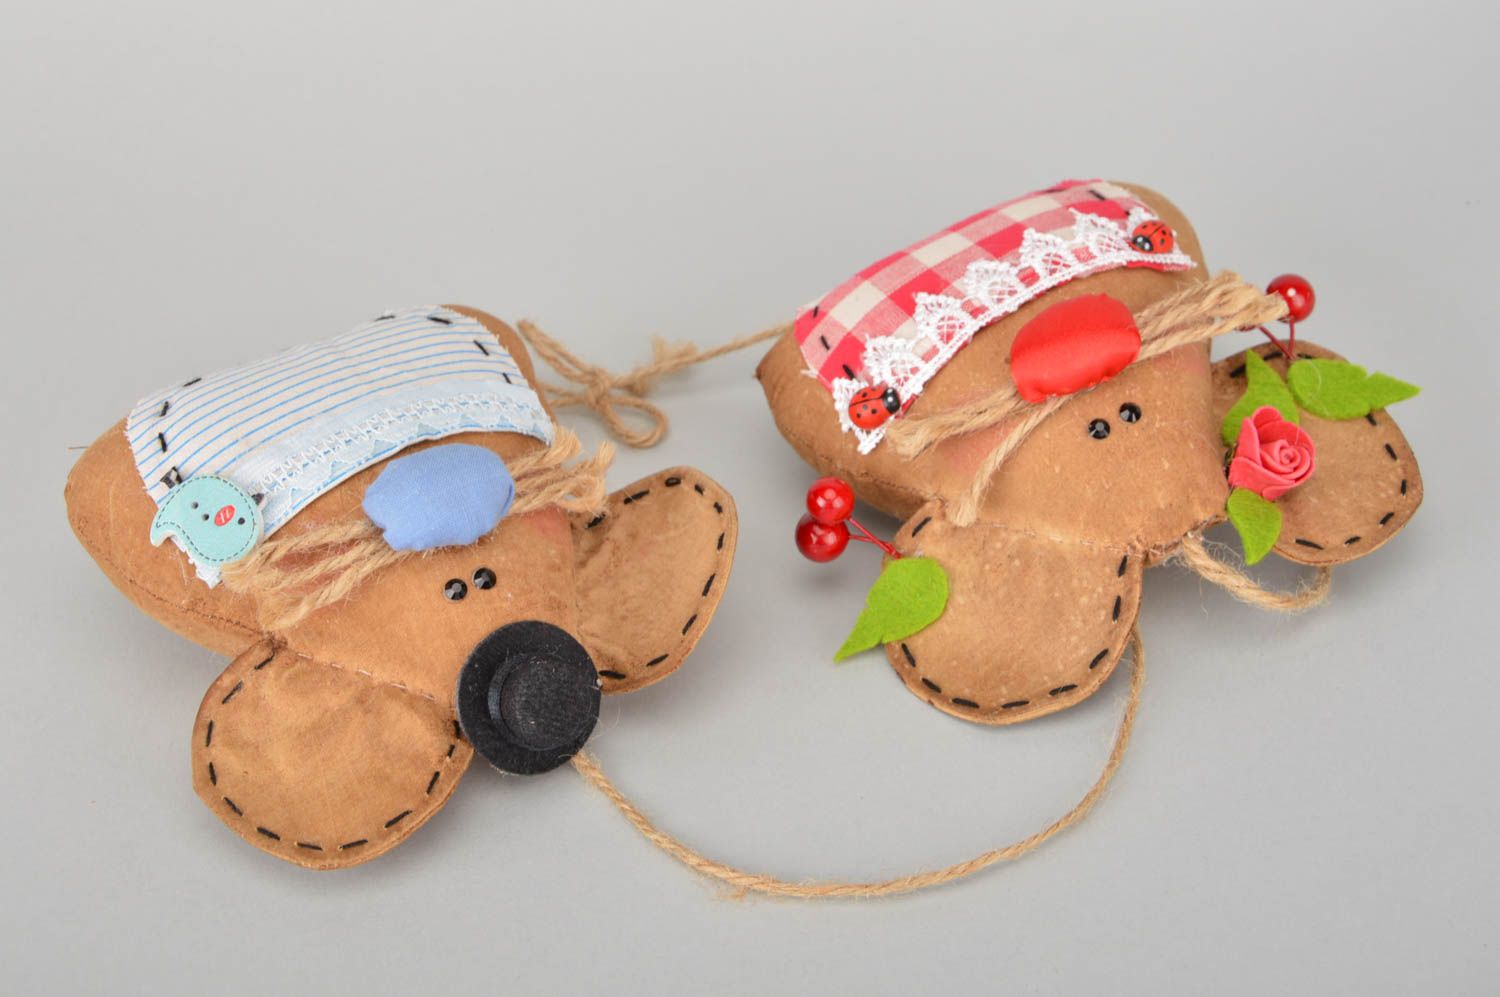 Интерьерная мягкая игрушка ручной работы из хлопка Семейная пара мышат фото 3